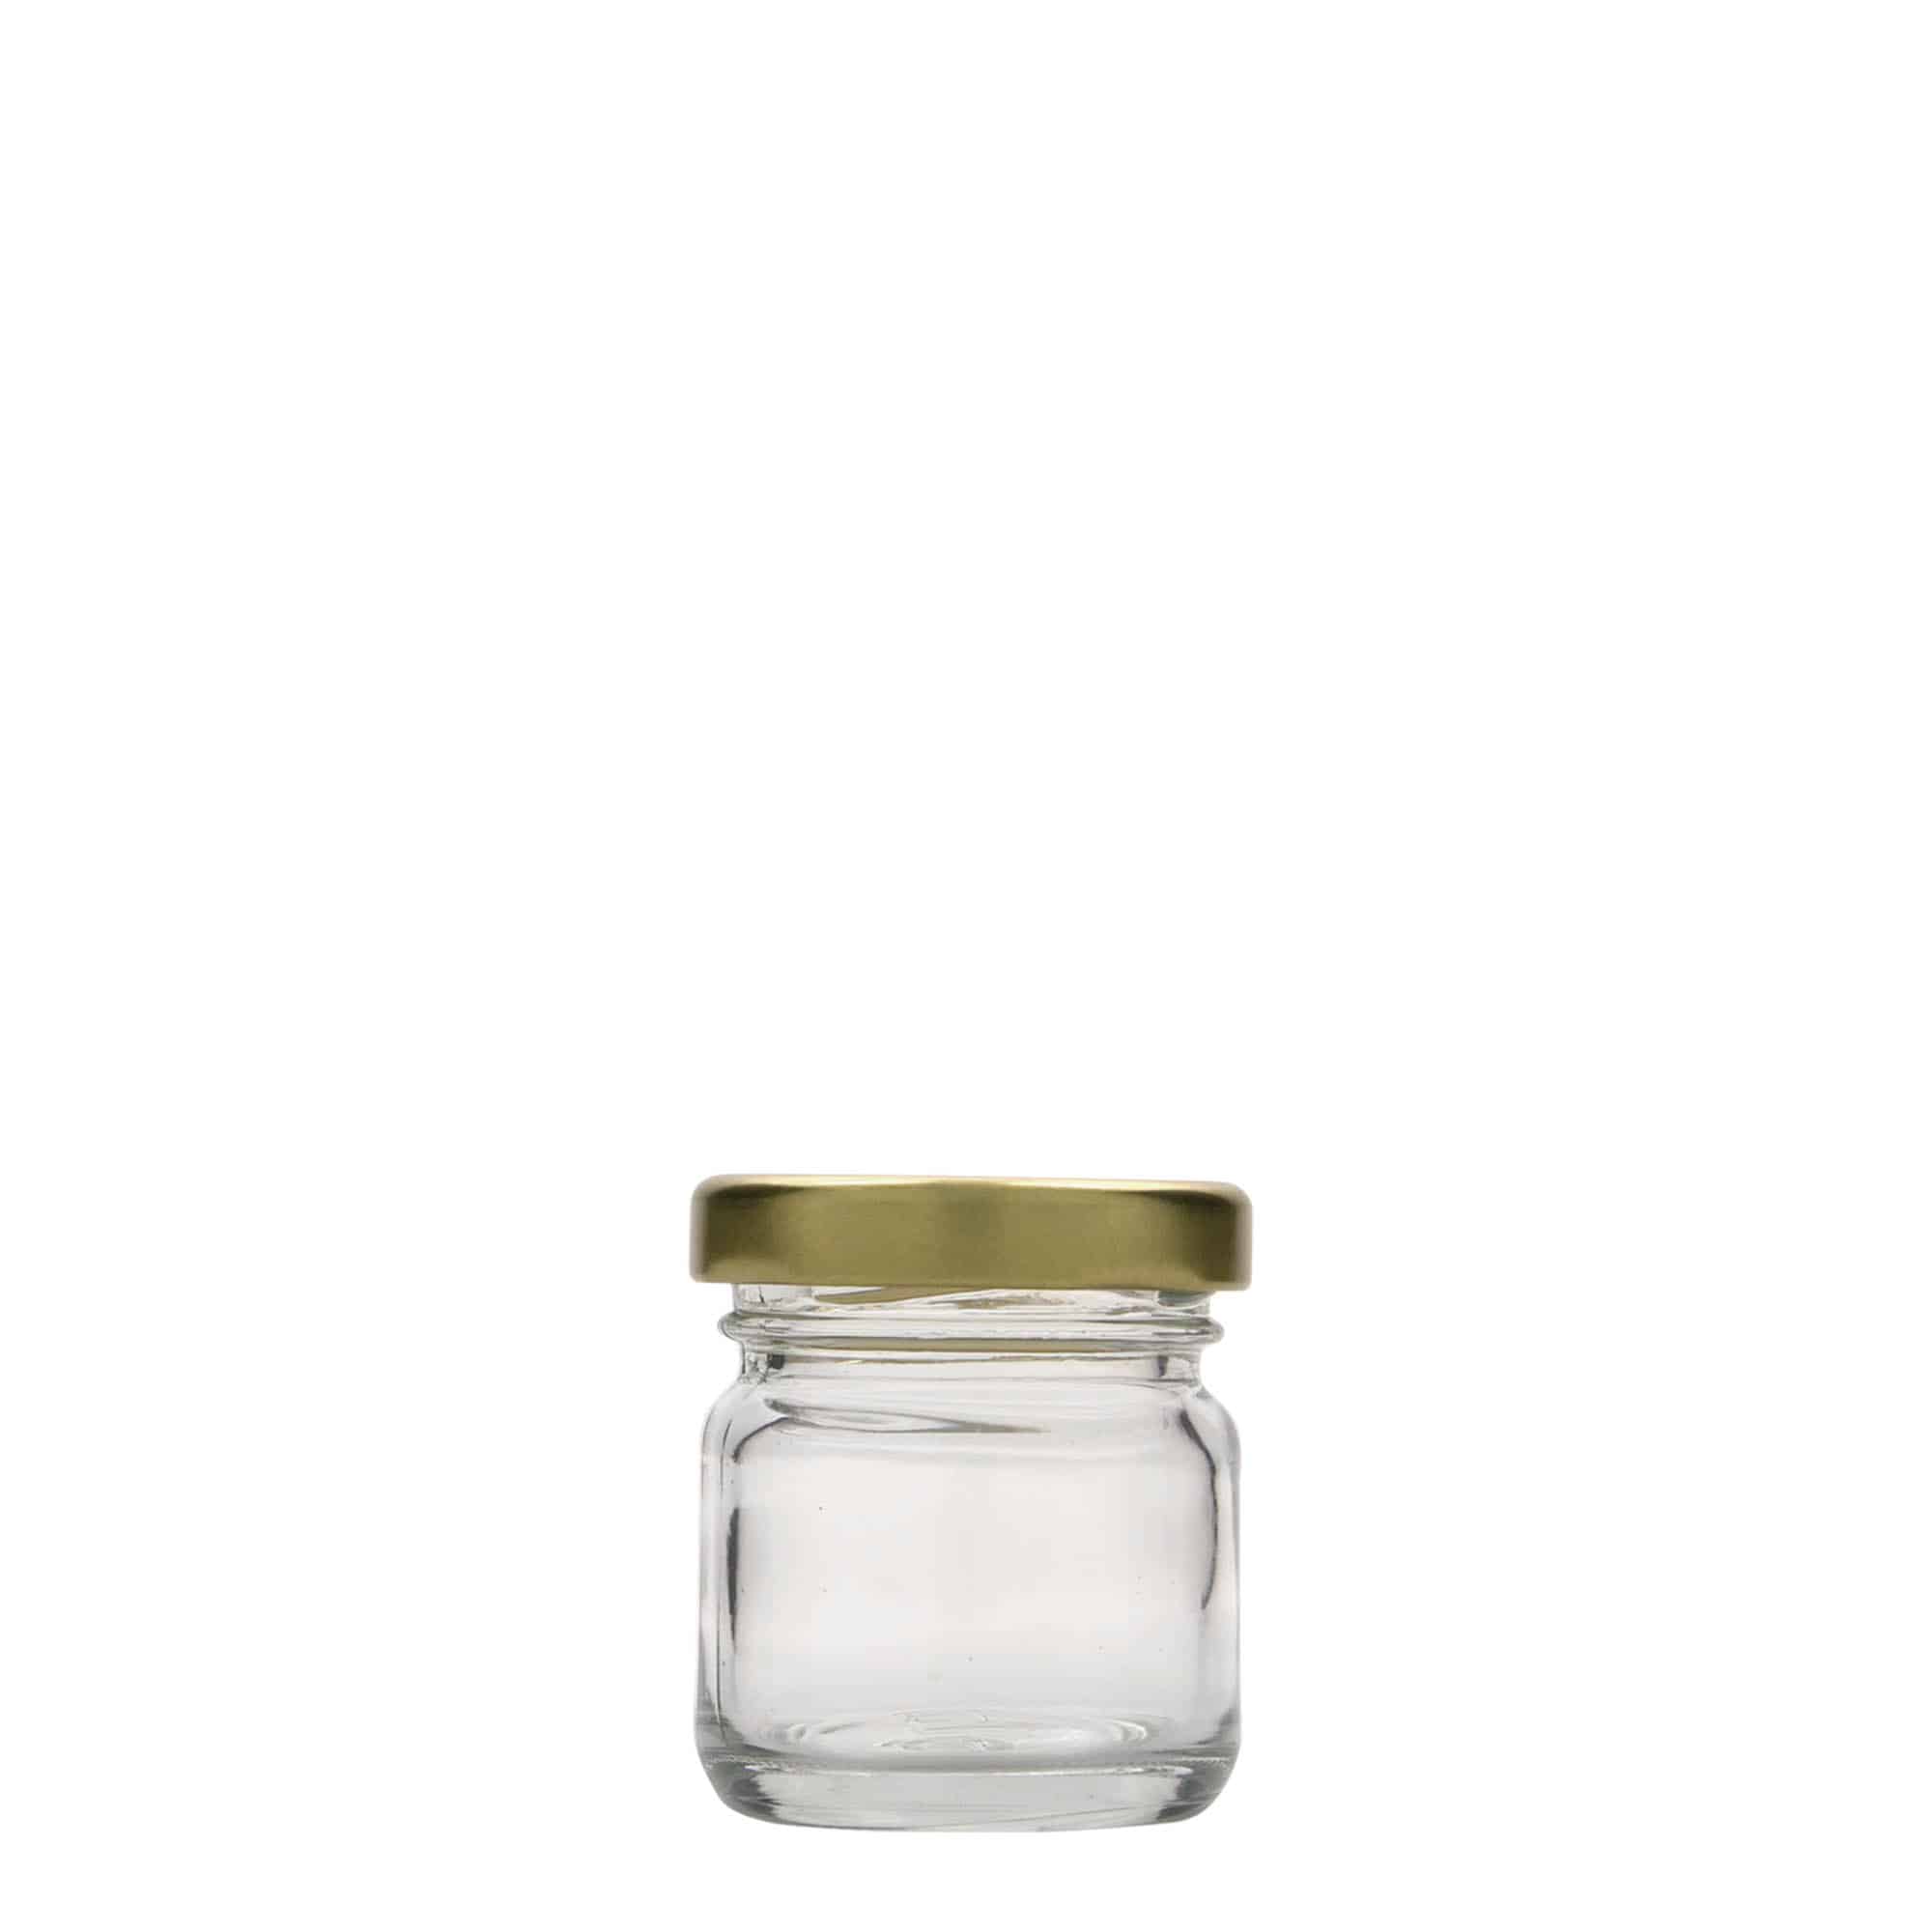 40 ml round jar, closure: twist off (TO 43)